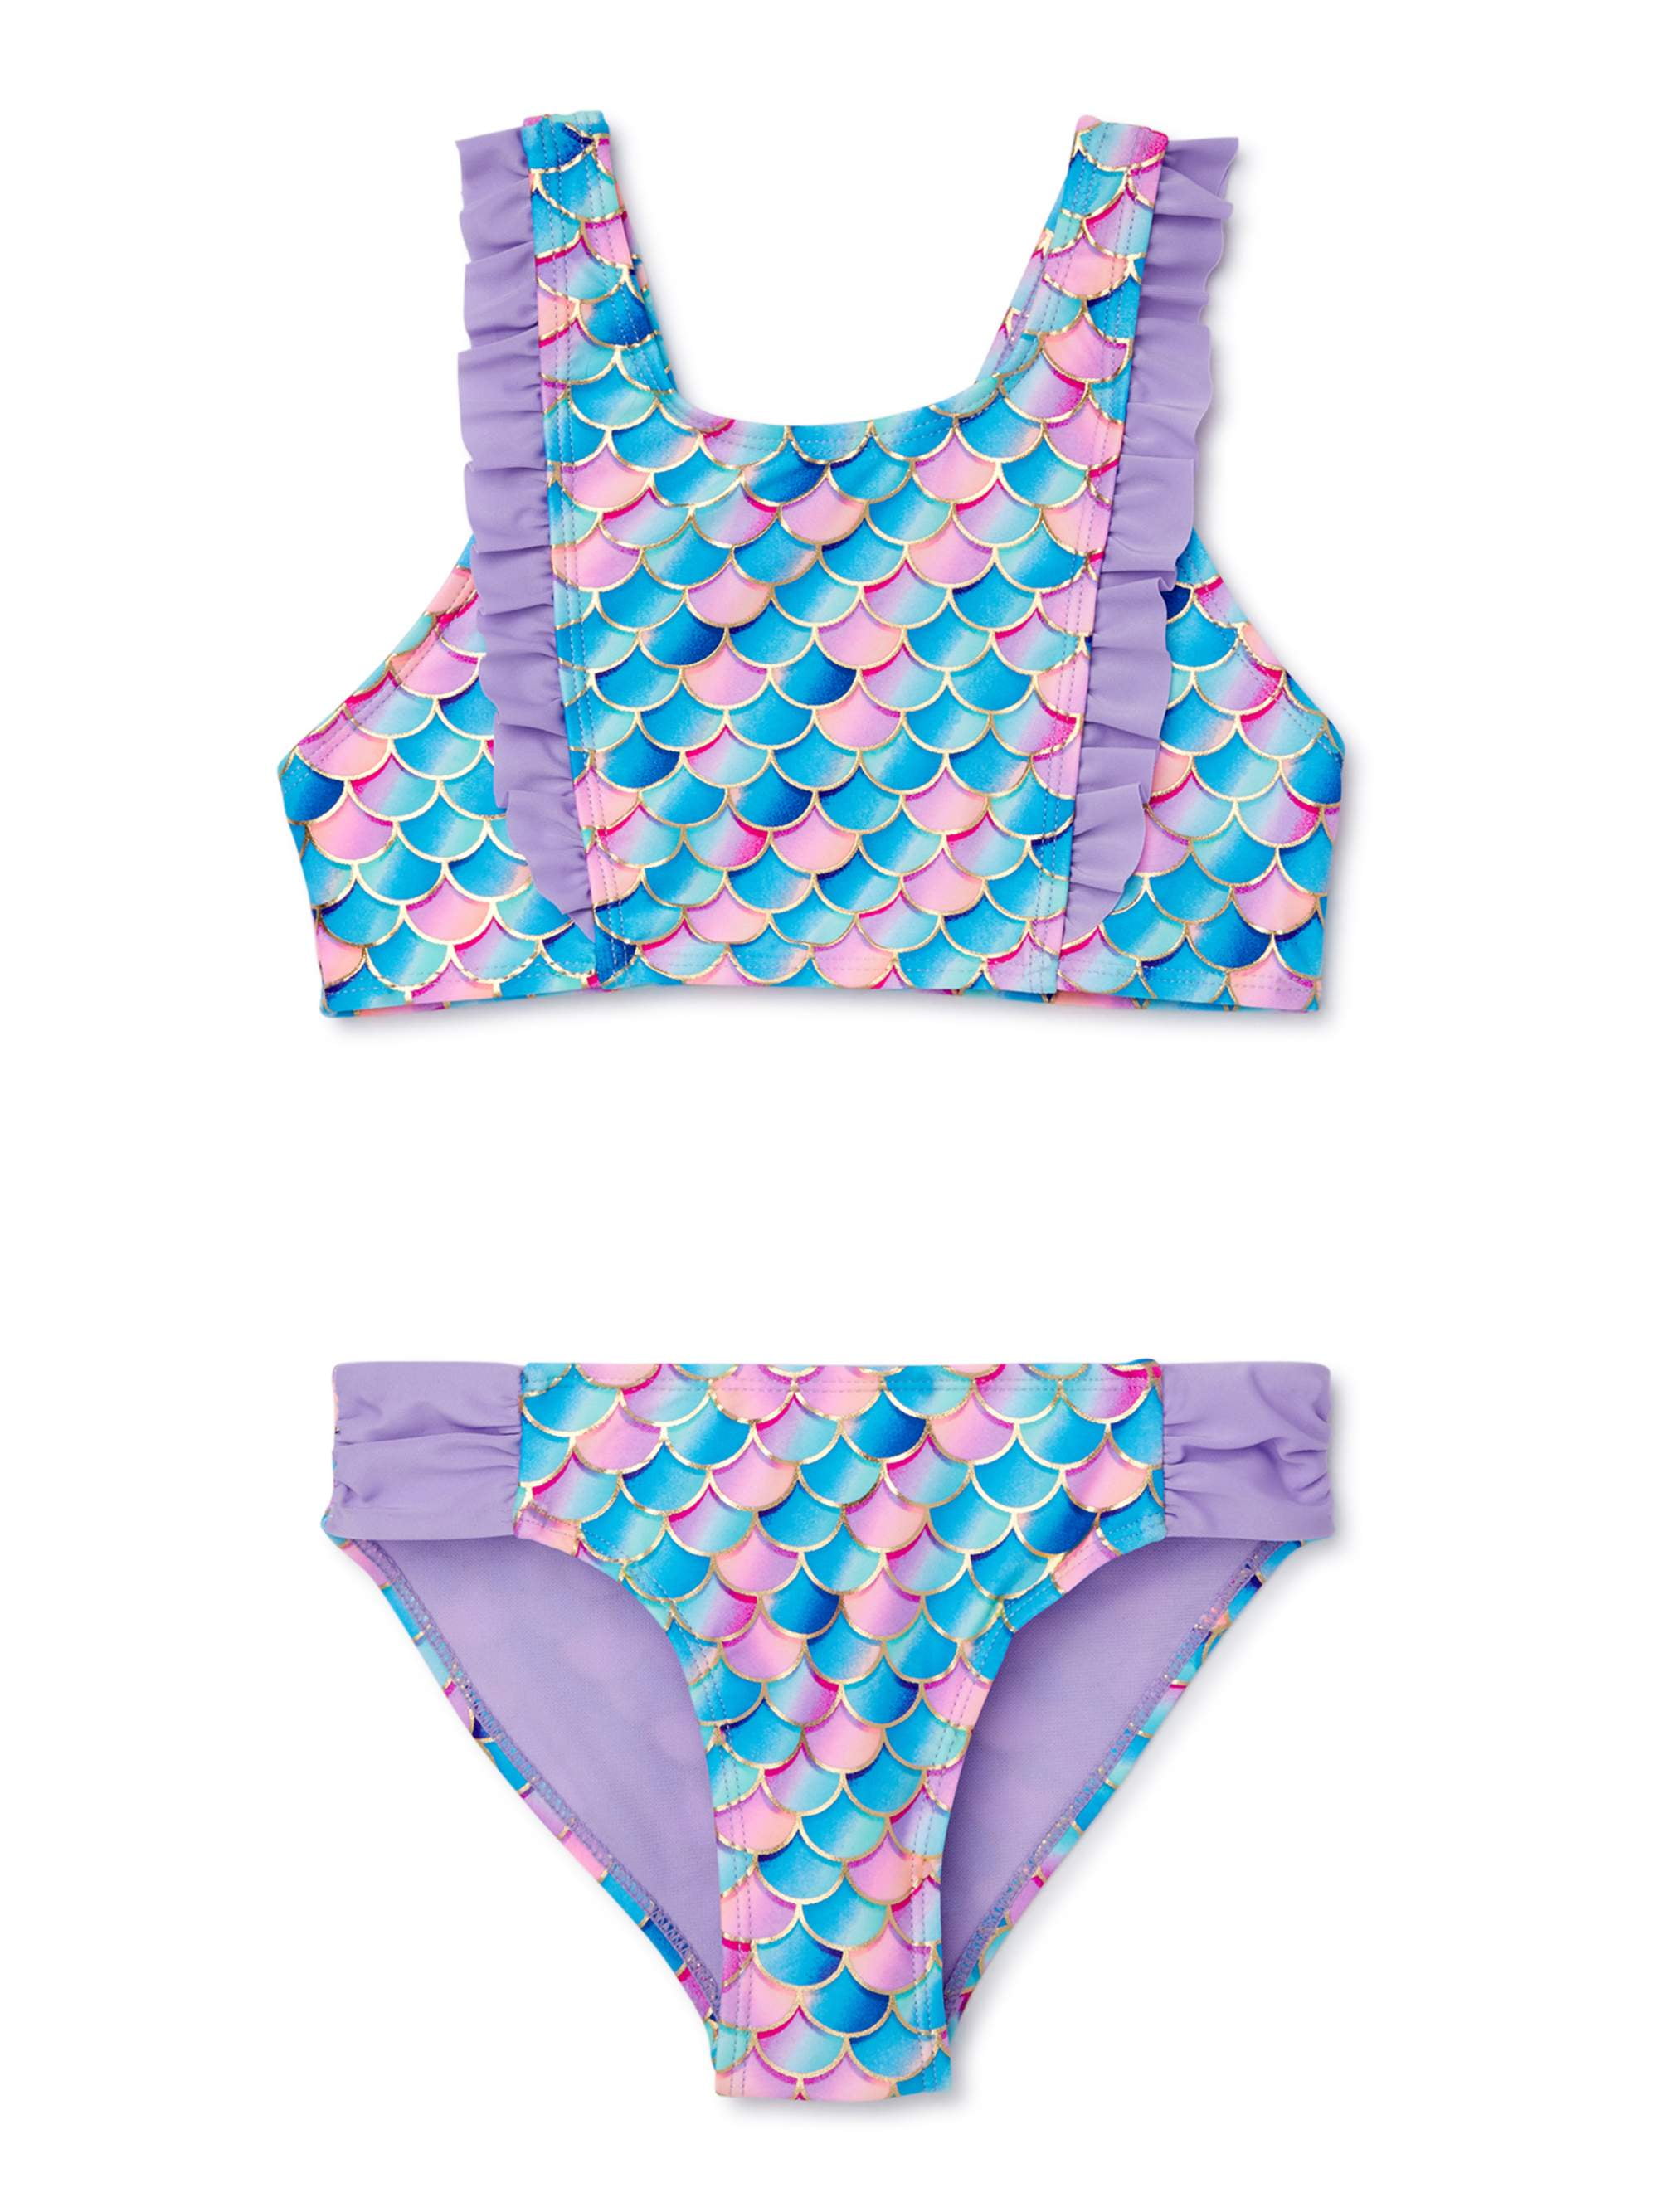 6 Hula Star Girls Butterfly Two-Piece Bikini Swimsuit Set Size 5 NEW